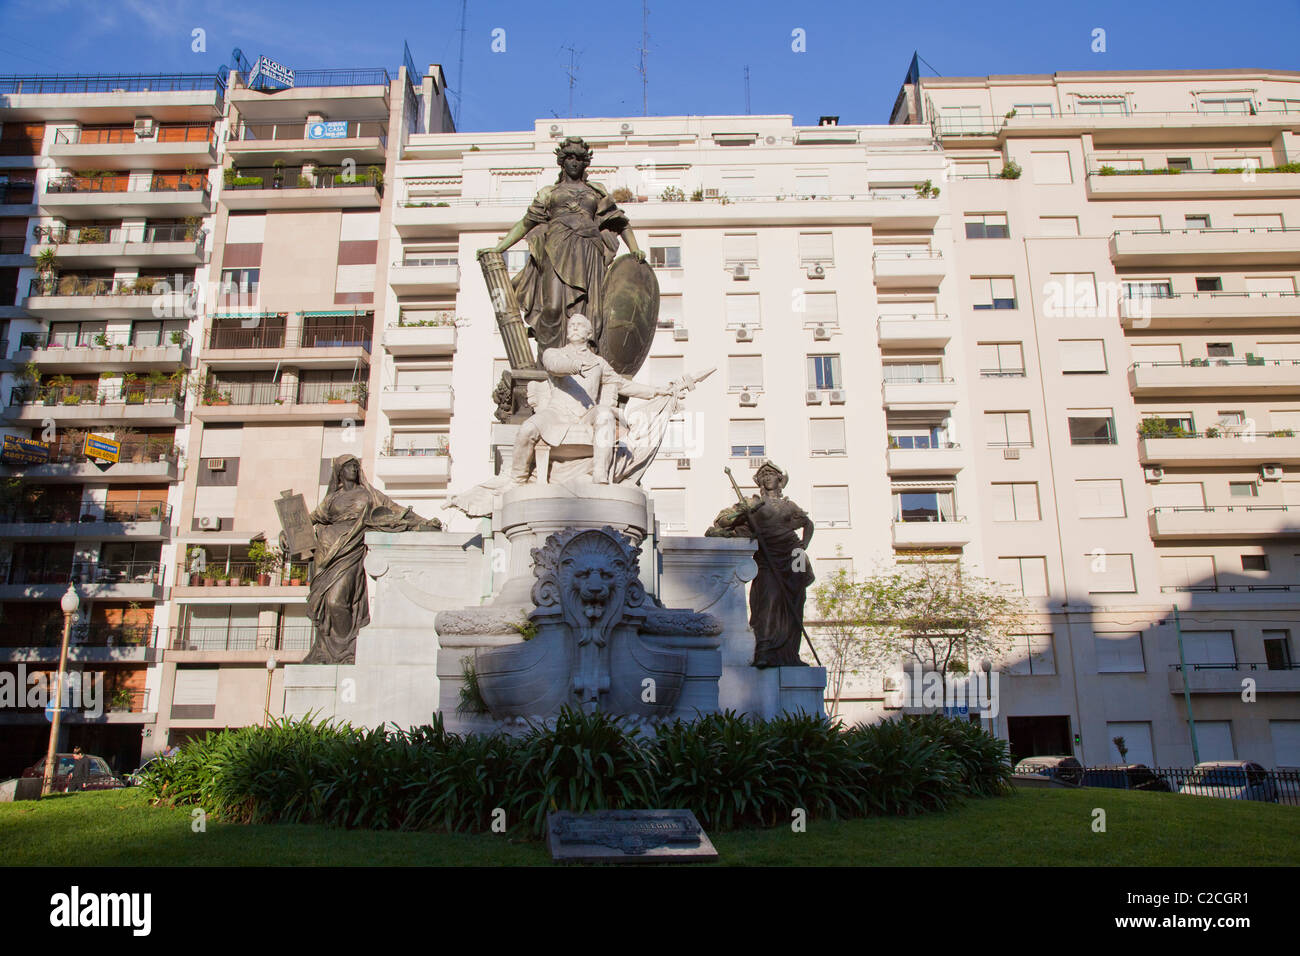 Statue of Carlos Pellegrini, Recoleta, Buenos Aires Stock Photo